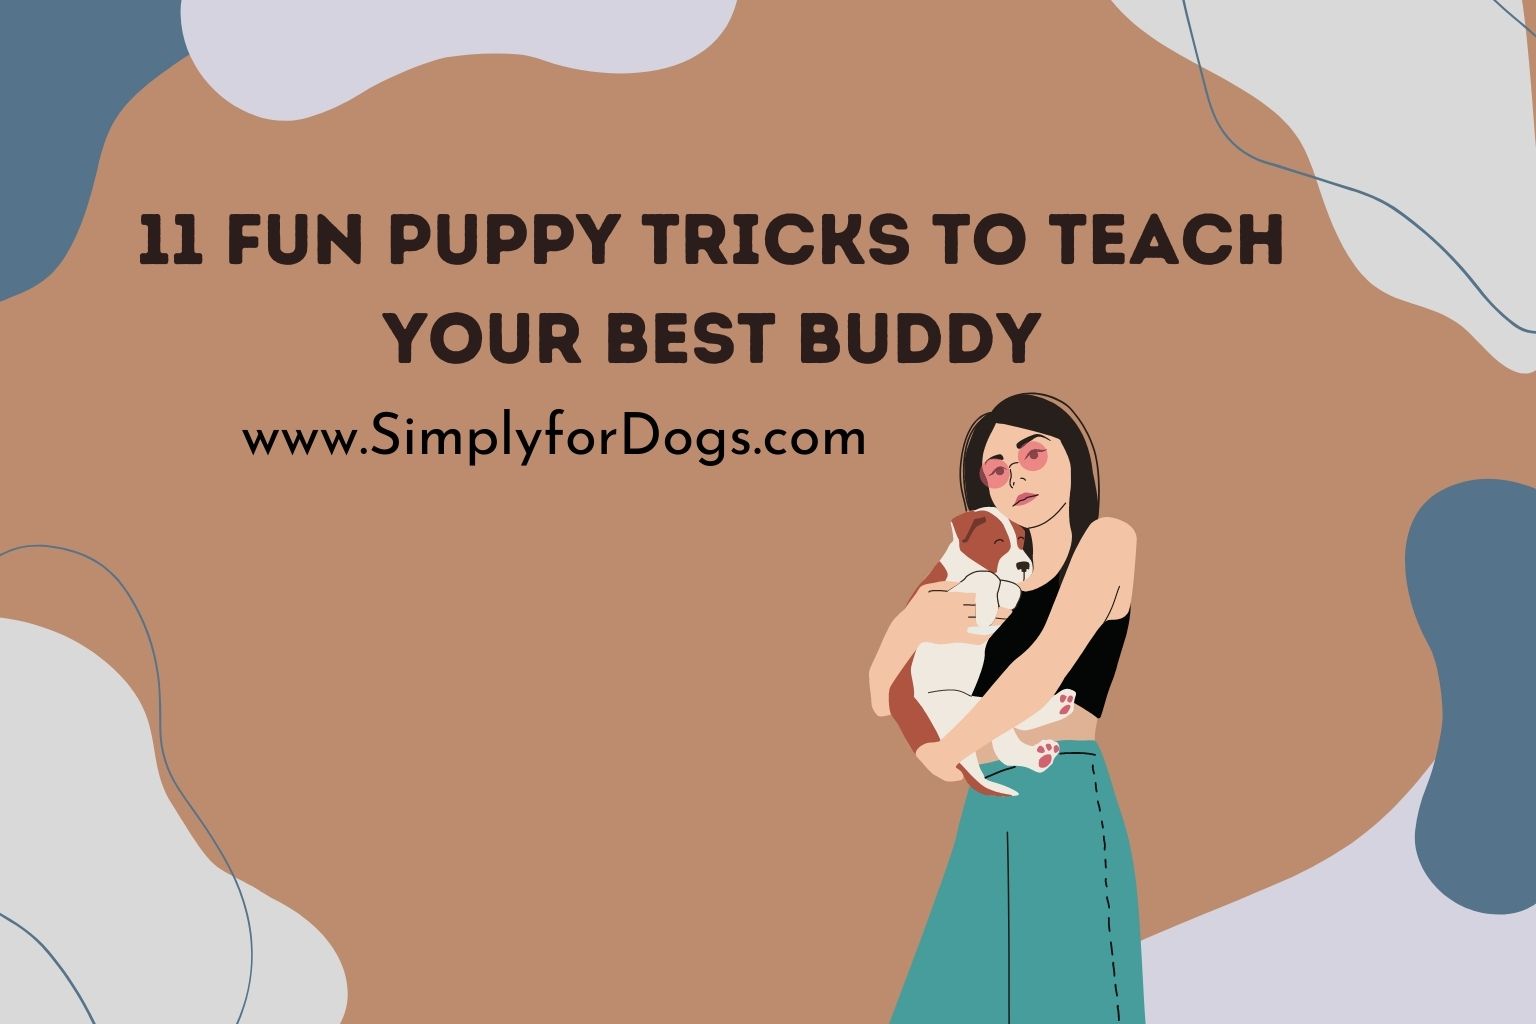 11 Fun Puppy Tricks to Teach Your Best Buddy